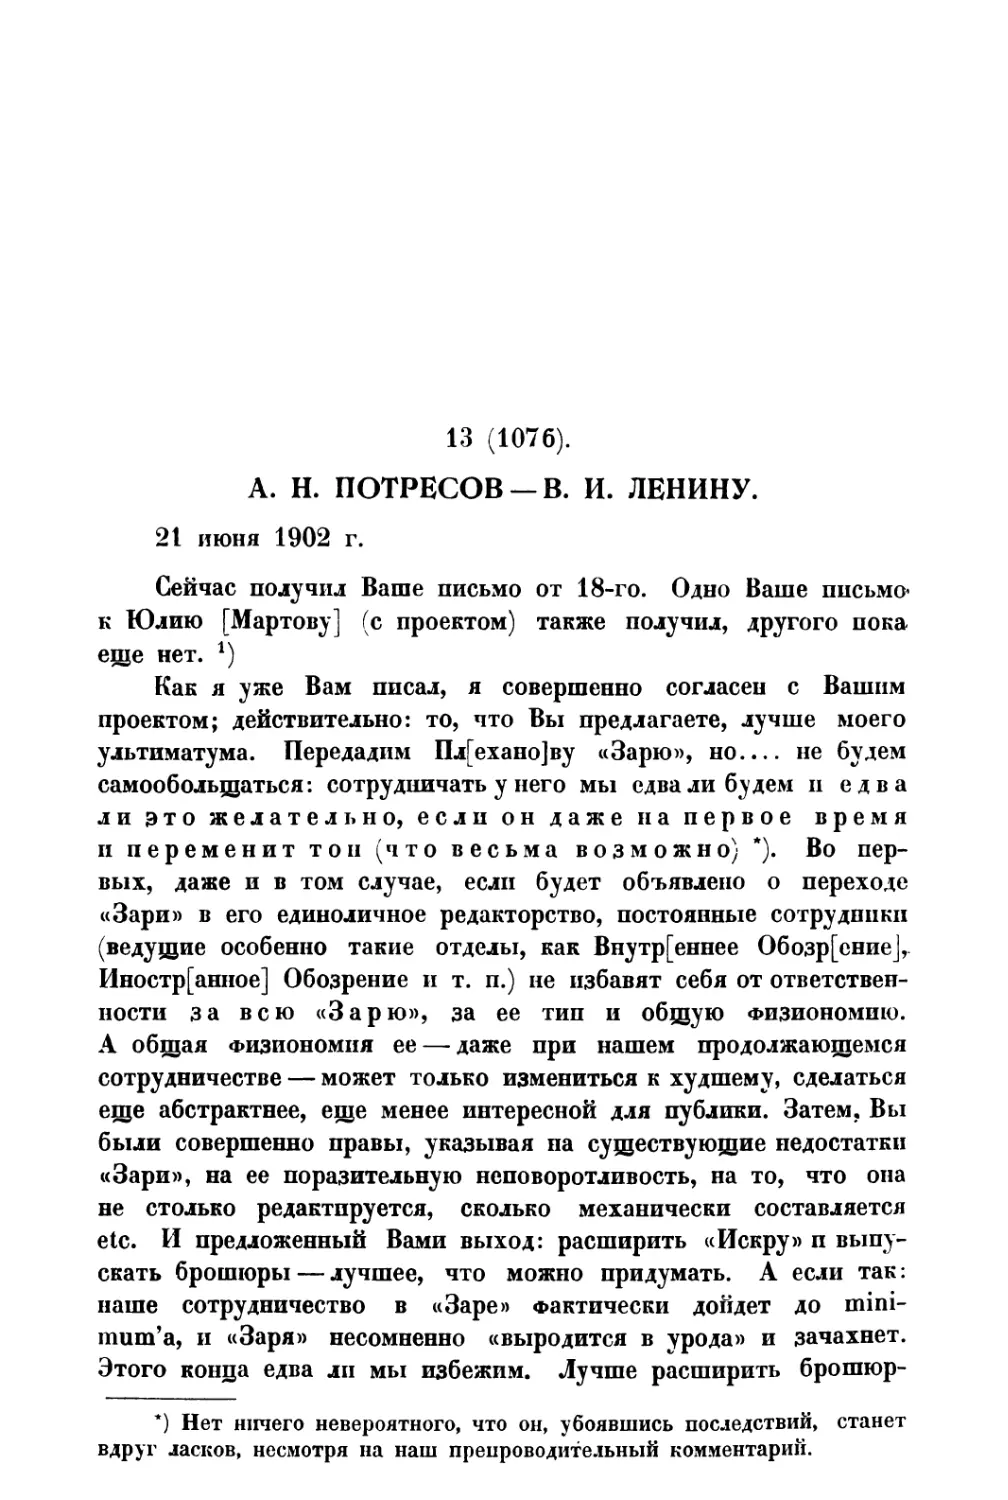 13. А. Н. Потресов — В. И. Ленину от 21 VI 1902 г